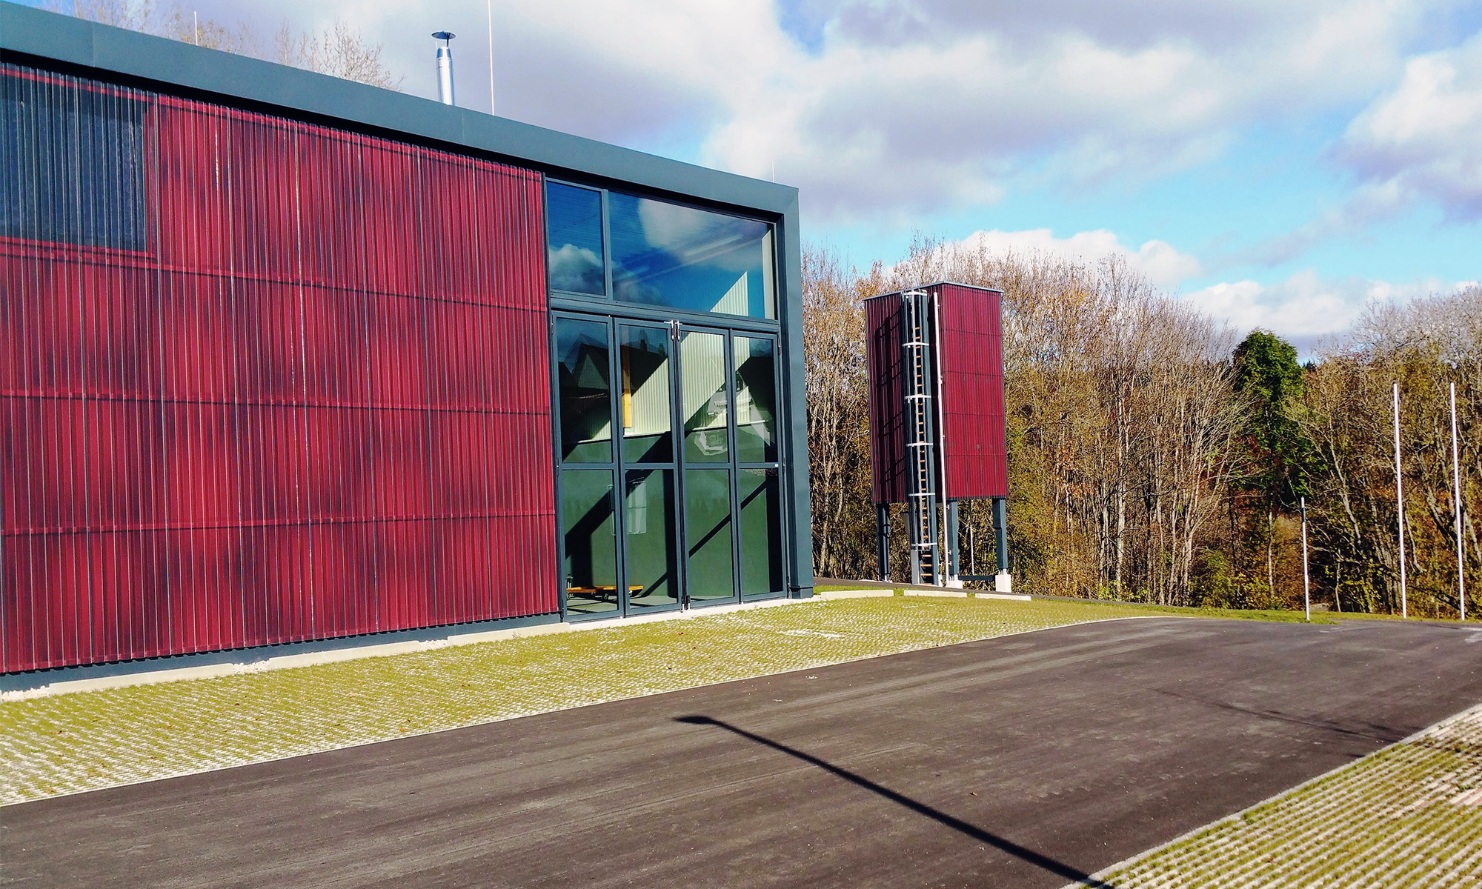 Moderner freistehender roter viereckiger Silo (E4) aus Holz neben neuem Gebäude mit roter Holzfassade und grossen grünen verglasten Toren